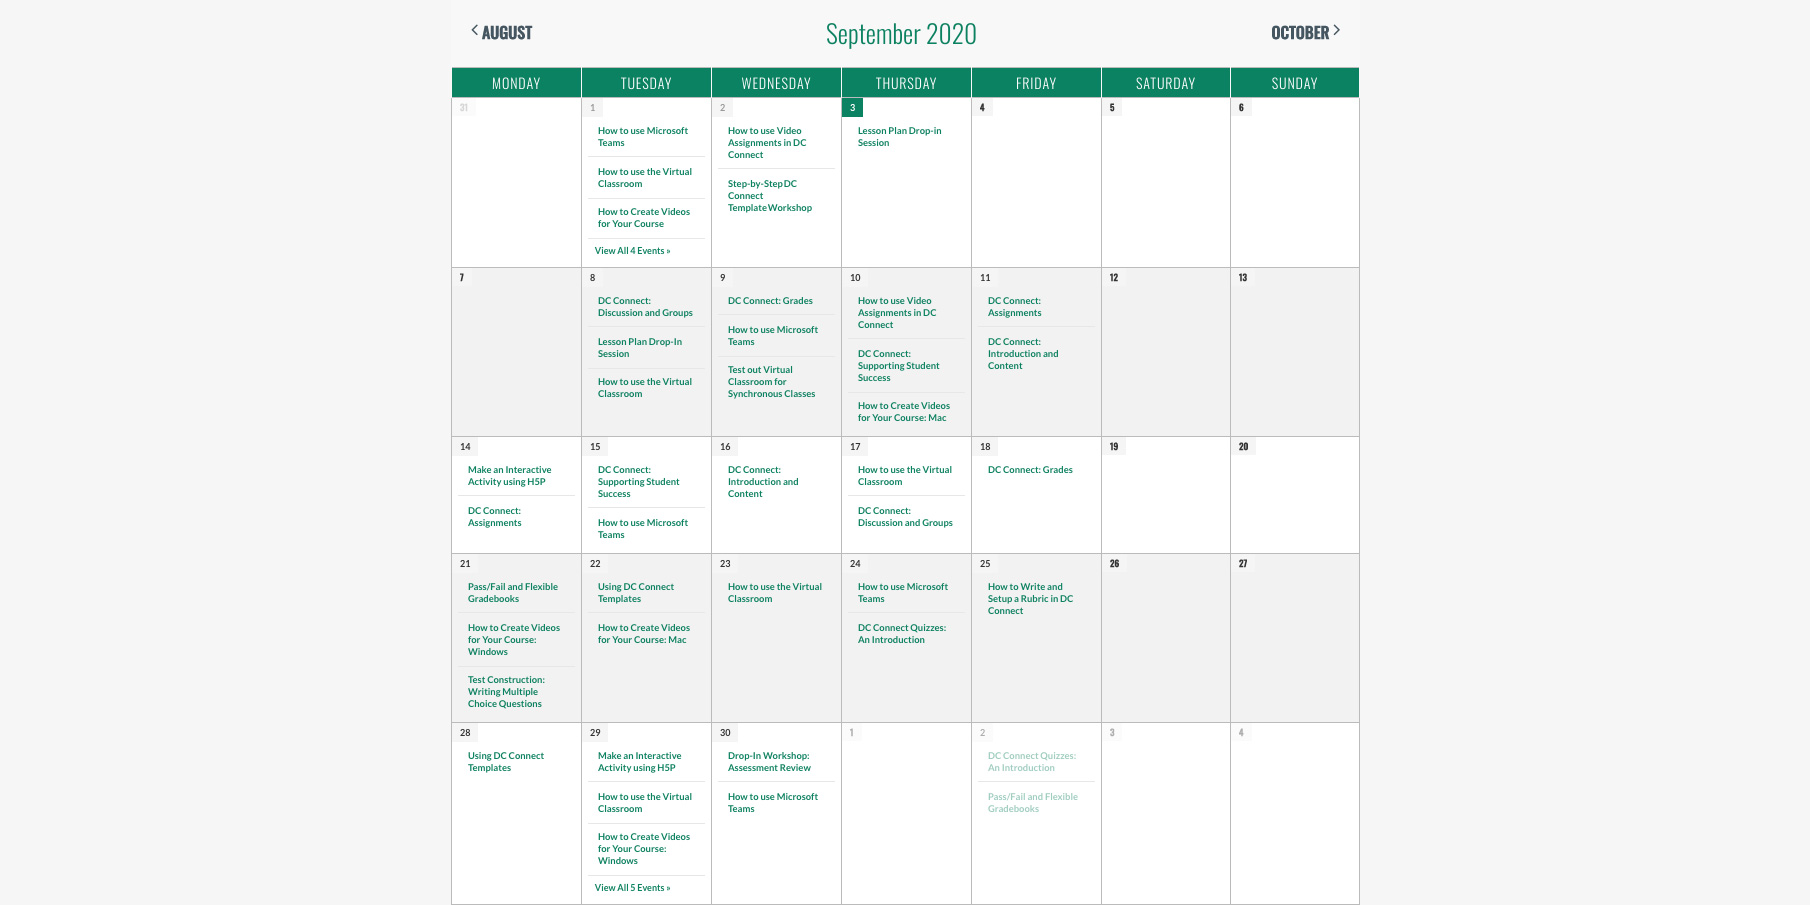 September Fall Professional Development Opportunities Calendar